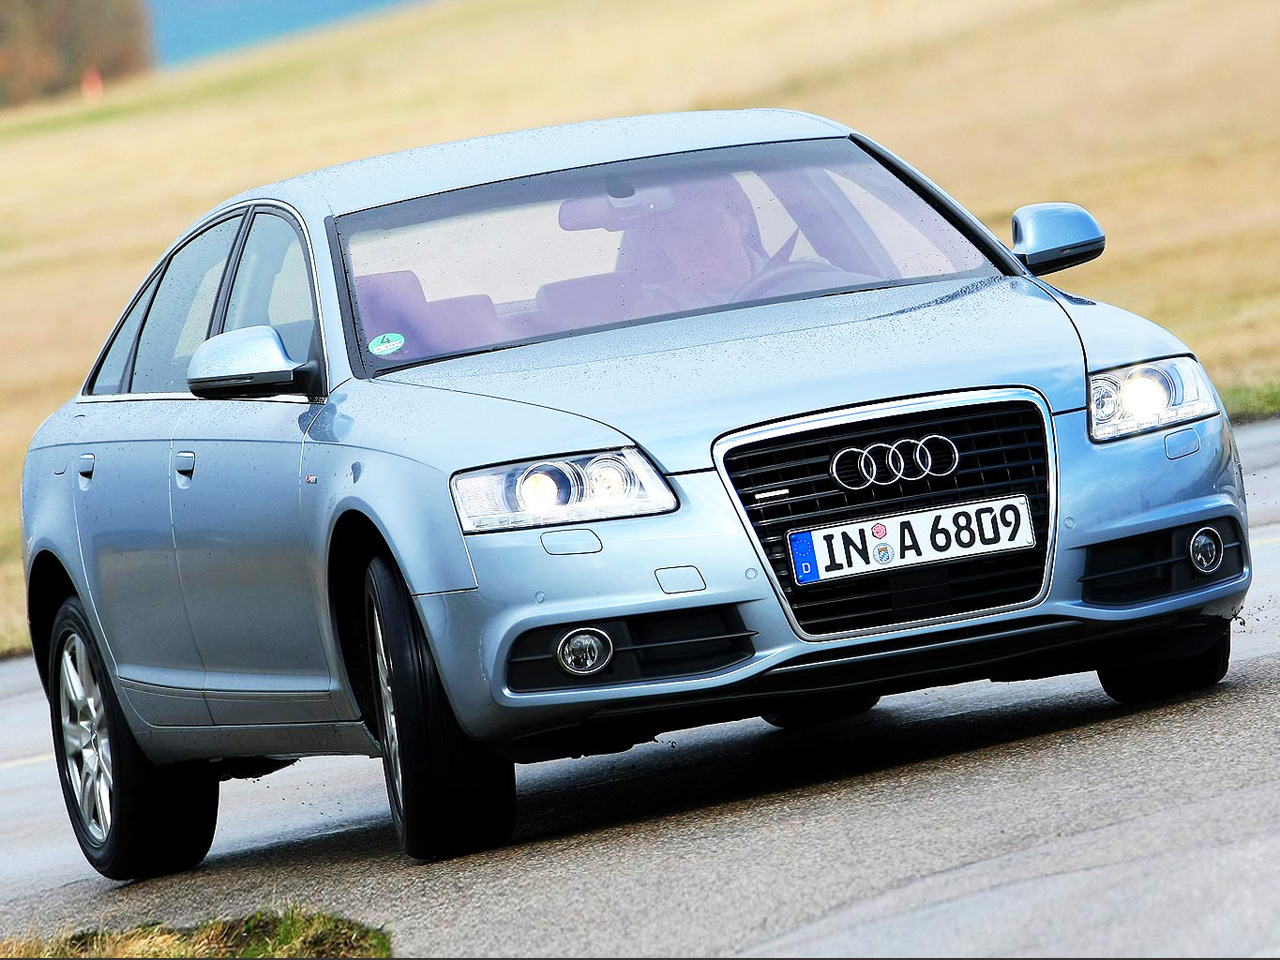 https://www.autozeitung.de/assets/gallery_images/2015/11/Audi-A6-Limousine-C4-1.jpg